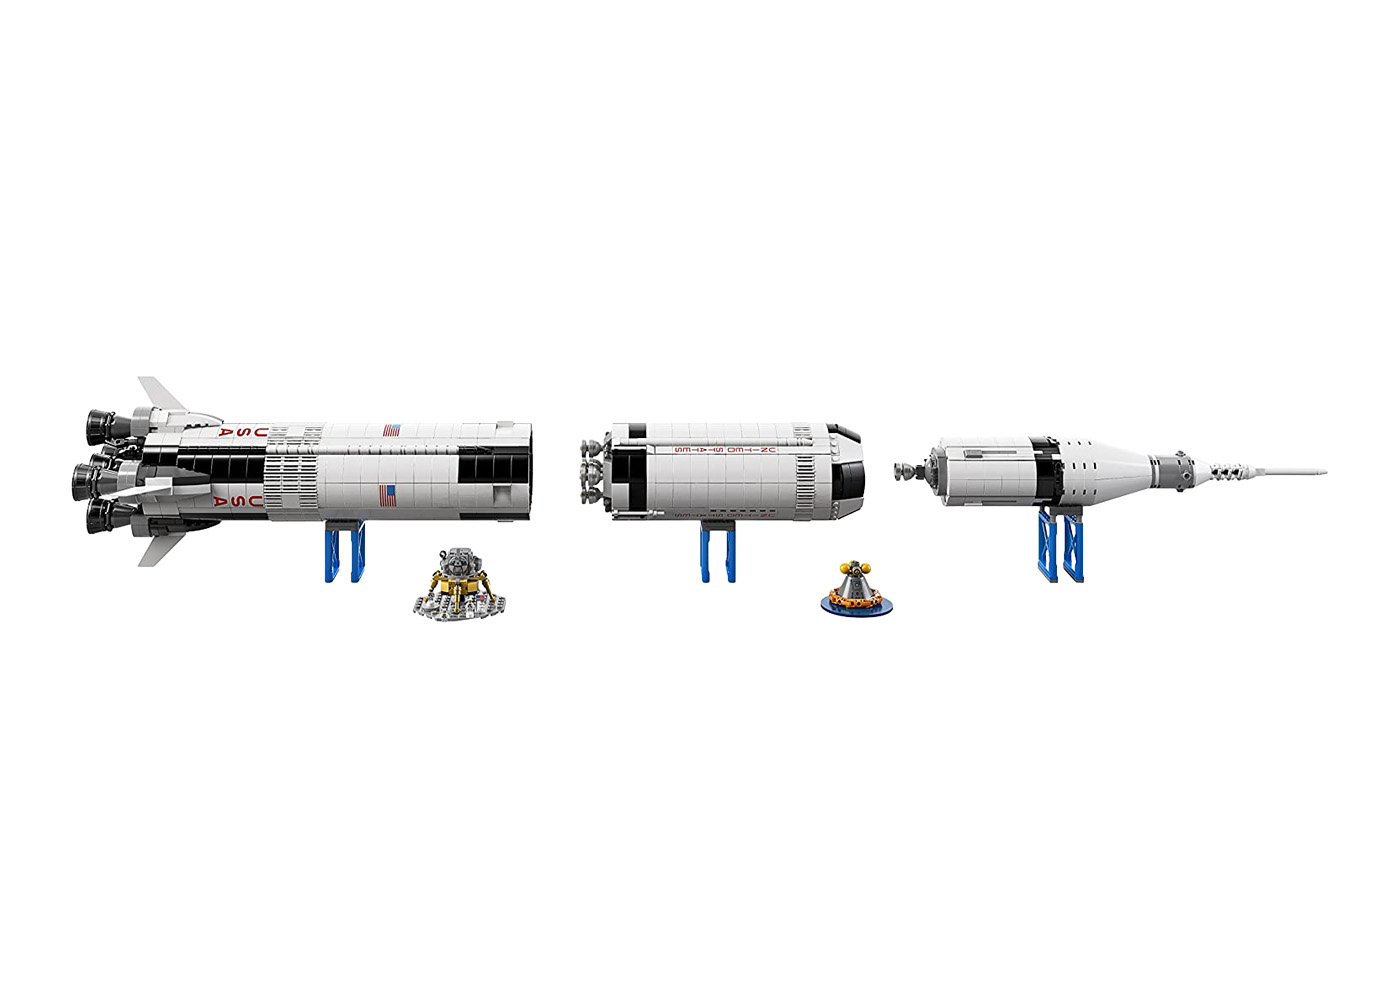 レゴ アイデア NASA アポロ計画 サターン V 92176 - JP